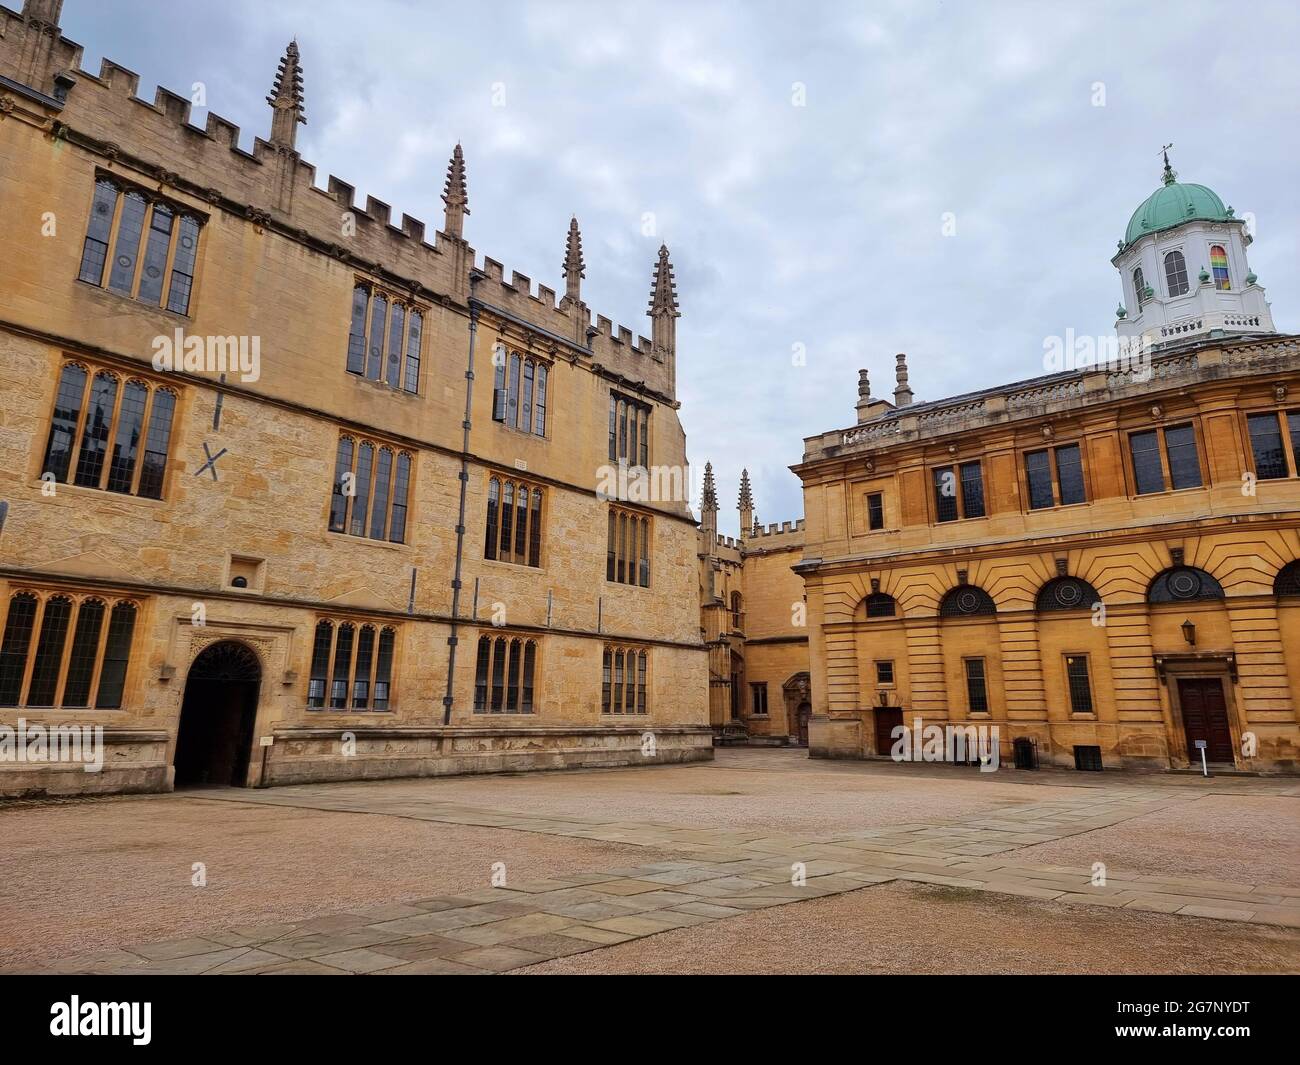 Blick auf die berühmte Bodleian Library in Oxford, England. Die Bodleian Library ist die wichtigste Forschungsbibliothek der University of Oxford und eine der ältesten Bibliotheken in Europa, die ihren Namen vom Gründer Sir Thomas Bodley erhielt. Mit über 13 Millionen gedruckten Artikeln ist sie nach der British Library die zweitgrößte Bibliothek Großbritanniens. Oxford-Gelehrte sind als „Bodley“ oder „The Bod“ bekannt, sie arbeiten hauptsächlich als Referenzbibliothek und dürfen im Allgemeinen keine Dokumente aus den Lesesälen entfernen. Vereinigtes Königreich. Stockfoto